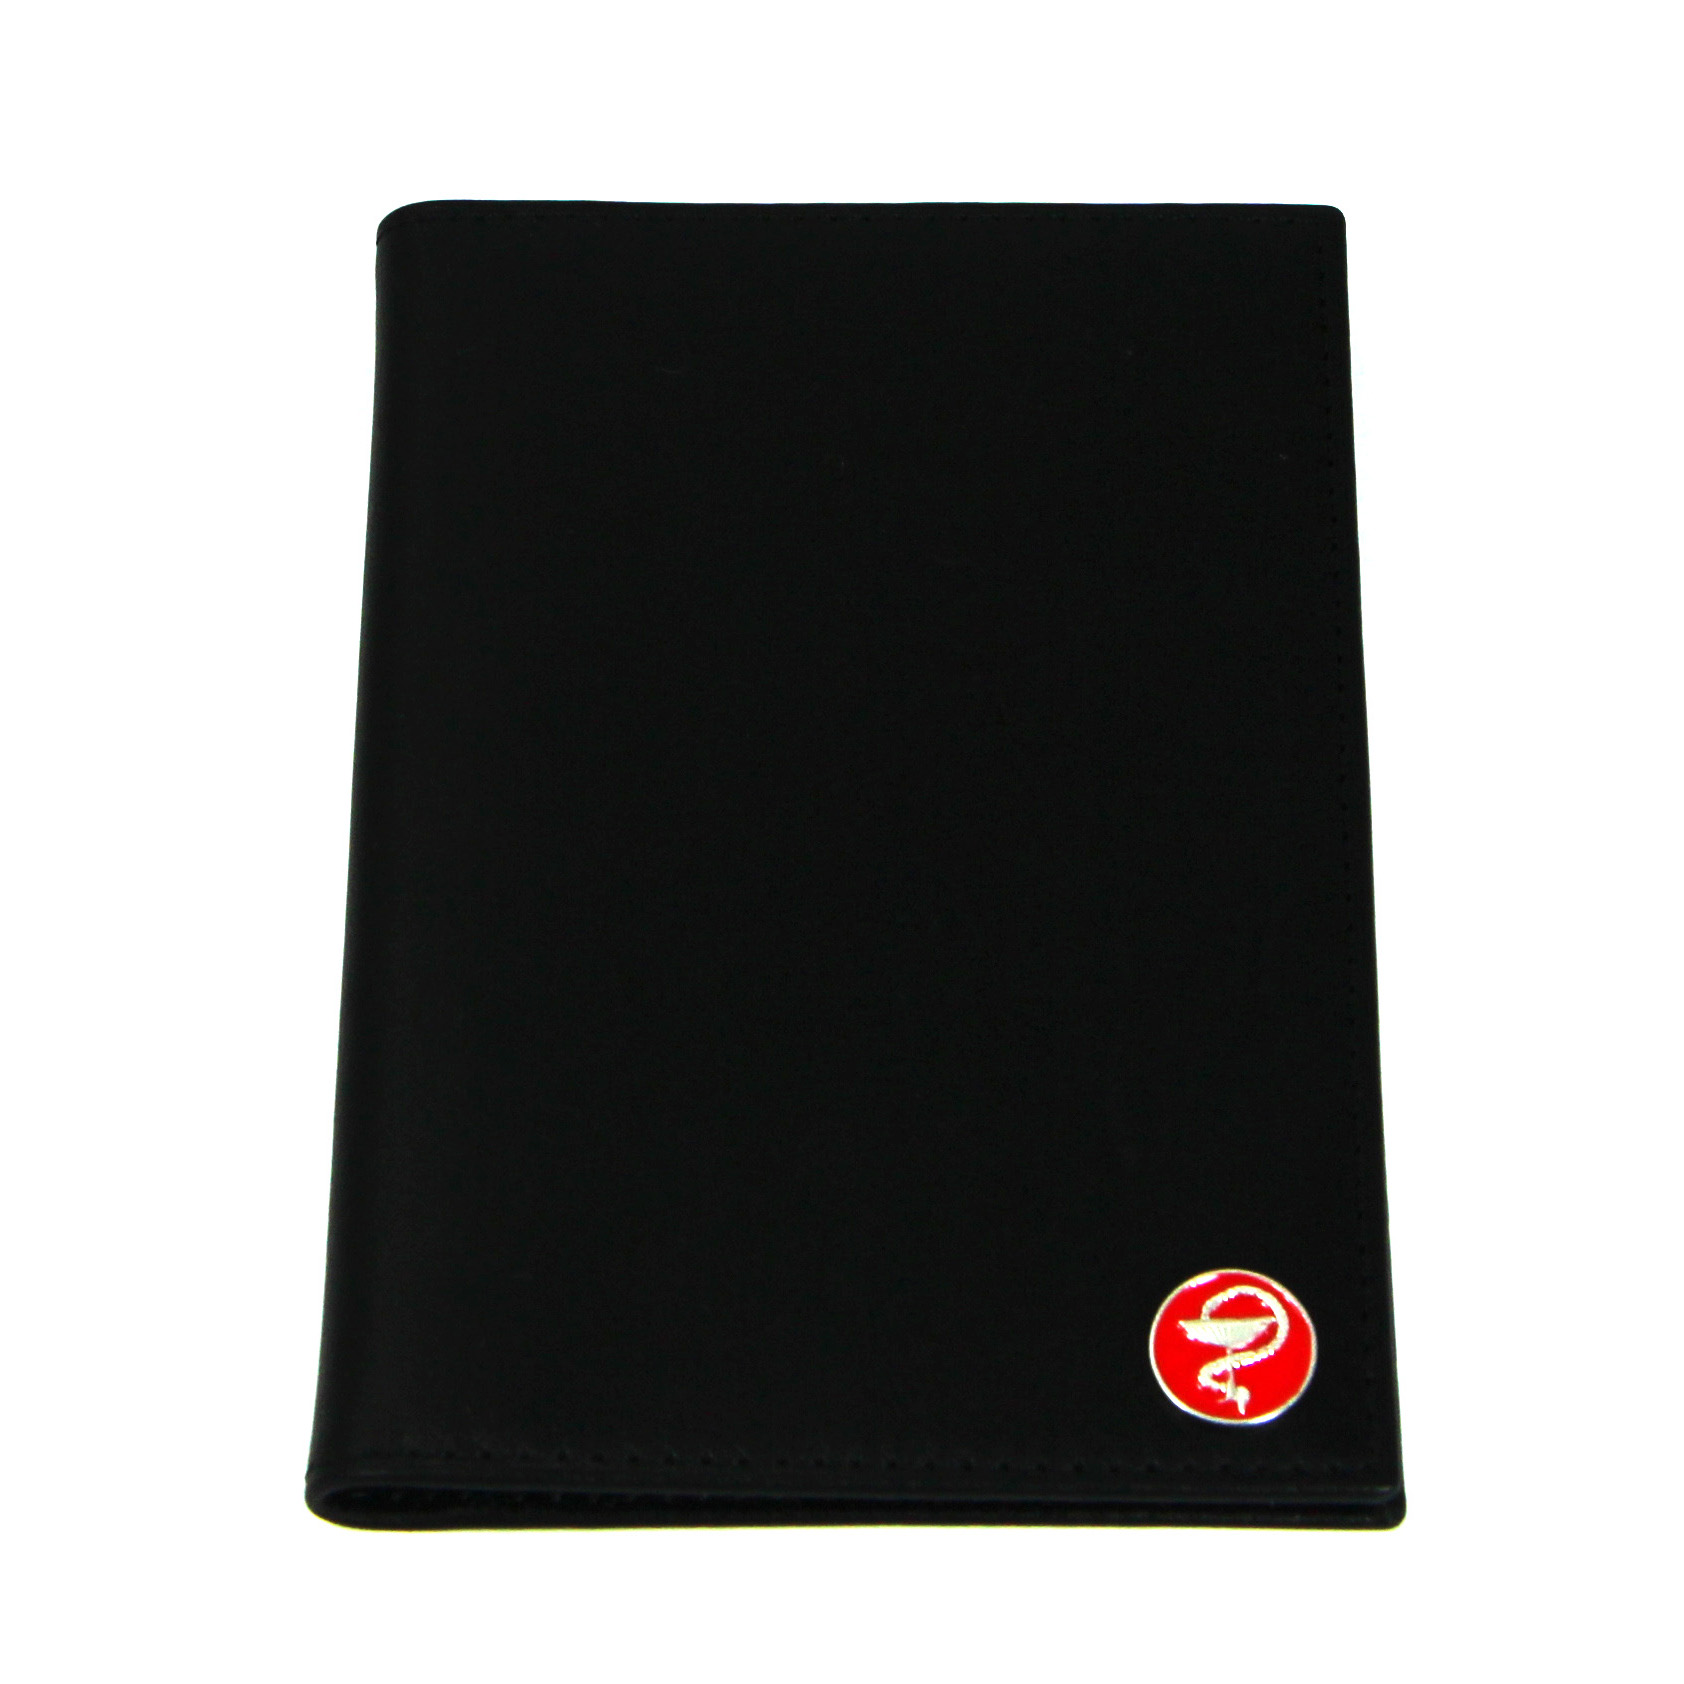 Черная кожаная обложка для автодокументов для врачей SOLTAN 039 21 01 со вставкой из серебра